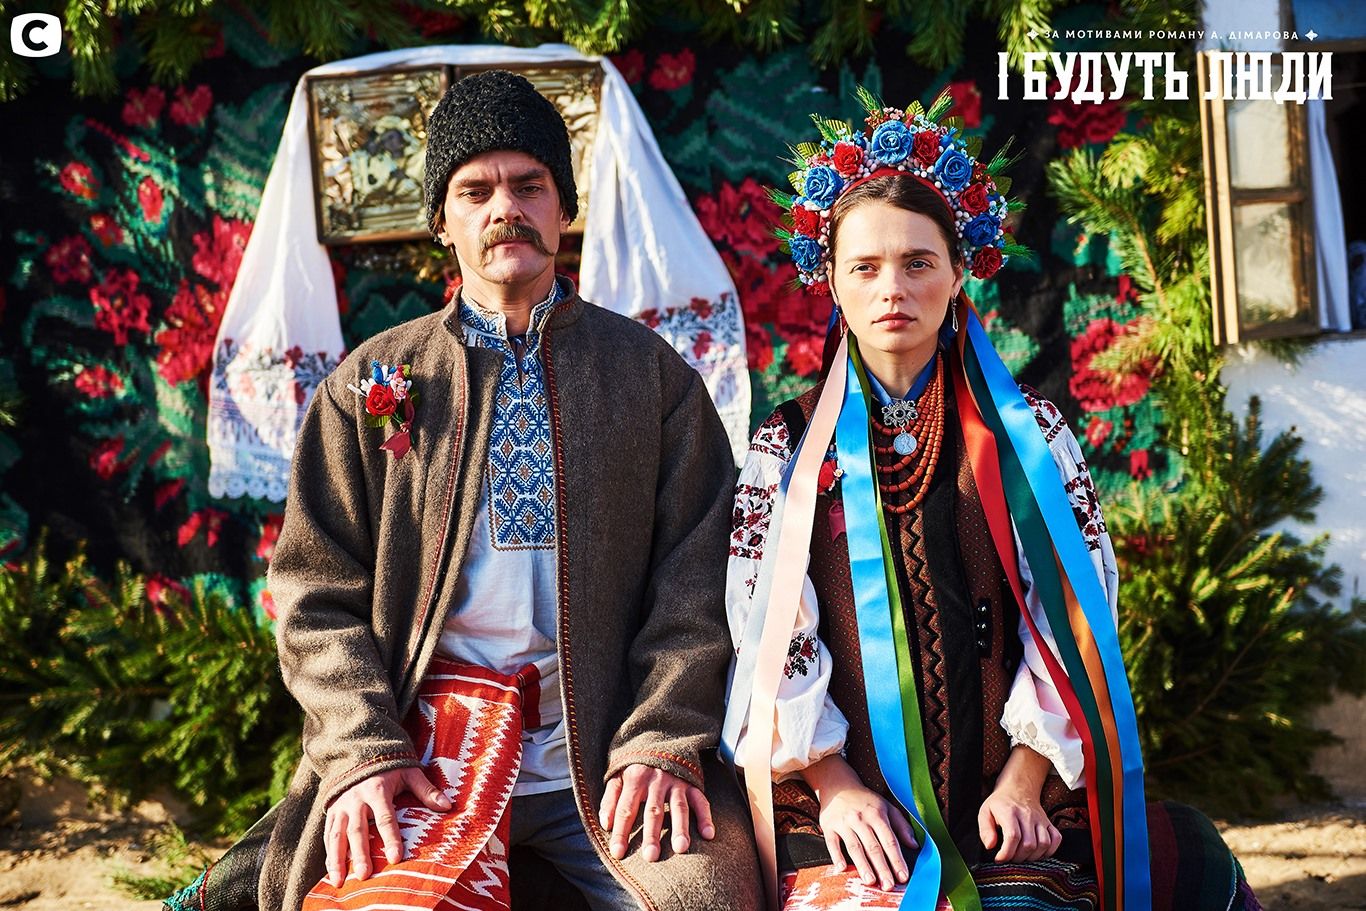 Кохання, ради, УНР і Голодомор: у телесеріалі покажуть сагу про українське село 100-літньої давнини